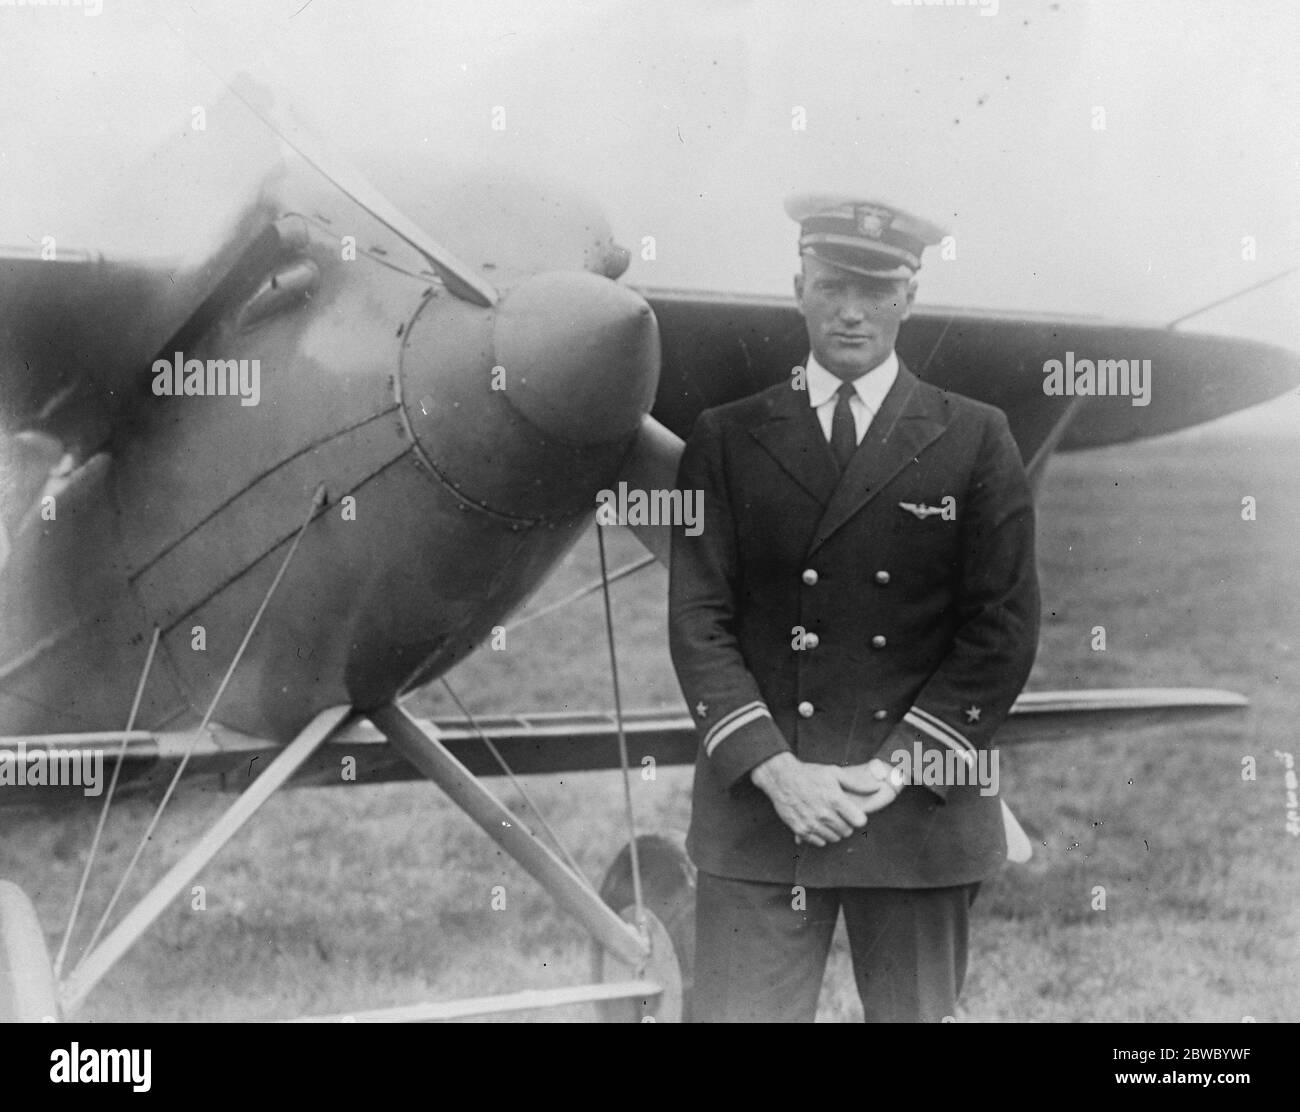 Fliegen bei 302 Meilen pro Stunde . Neuer Weltrekord LT Alvord J Williams, von der US Navy nach einem Flug mit seinem Curtiss-Racer bei 302 Meilen pro Stunde. Dies stellte einen Weltrekord für Geschwindigkeit 29 September 1925 Stockfoto